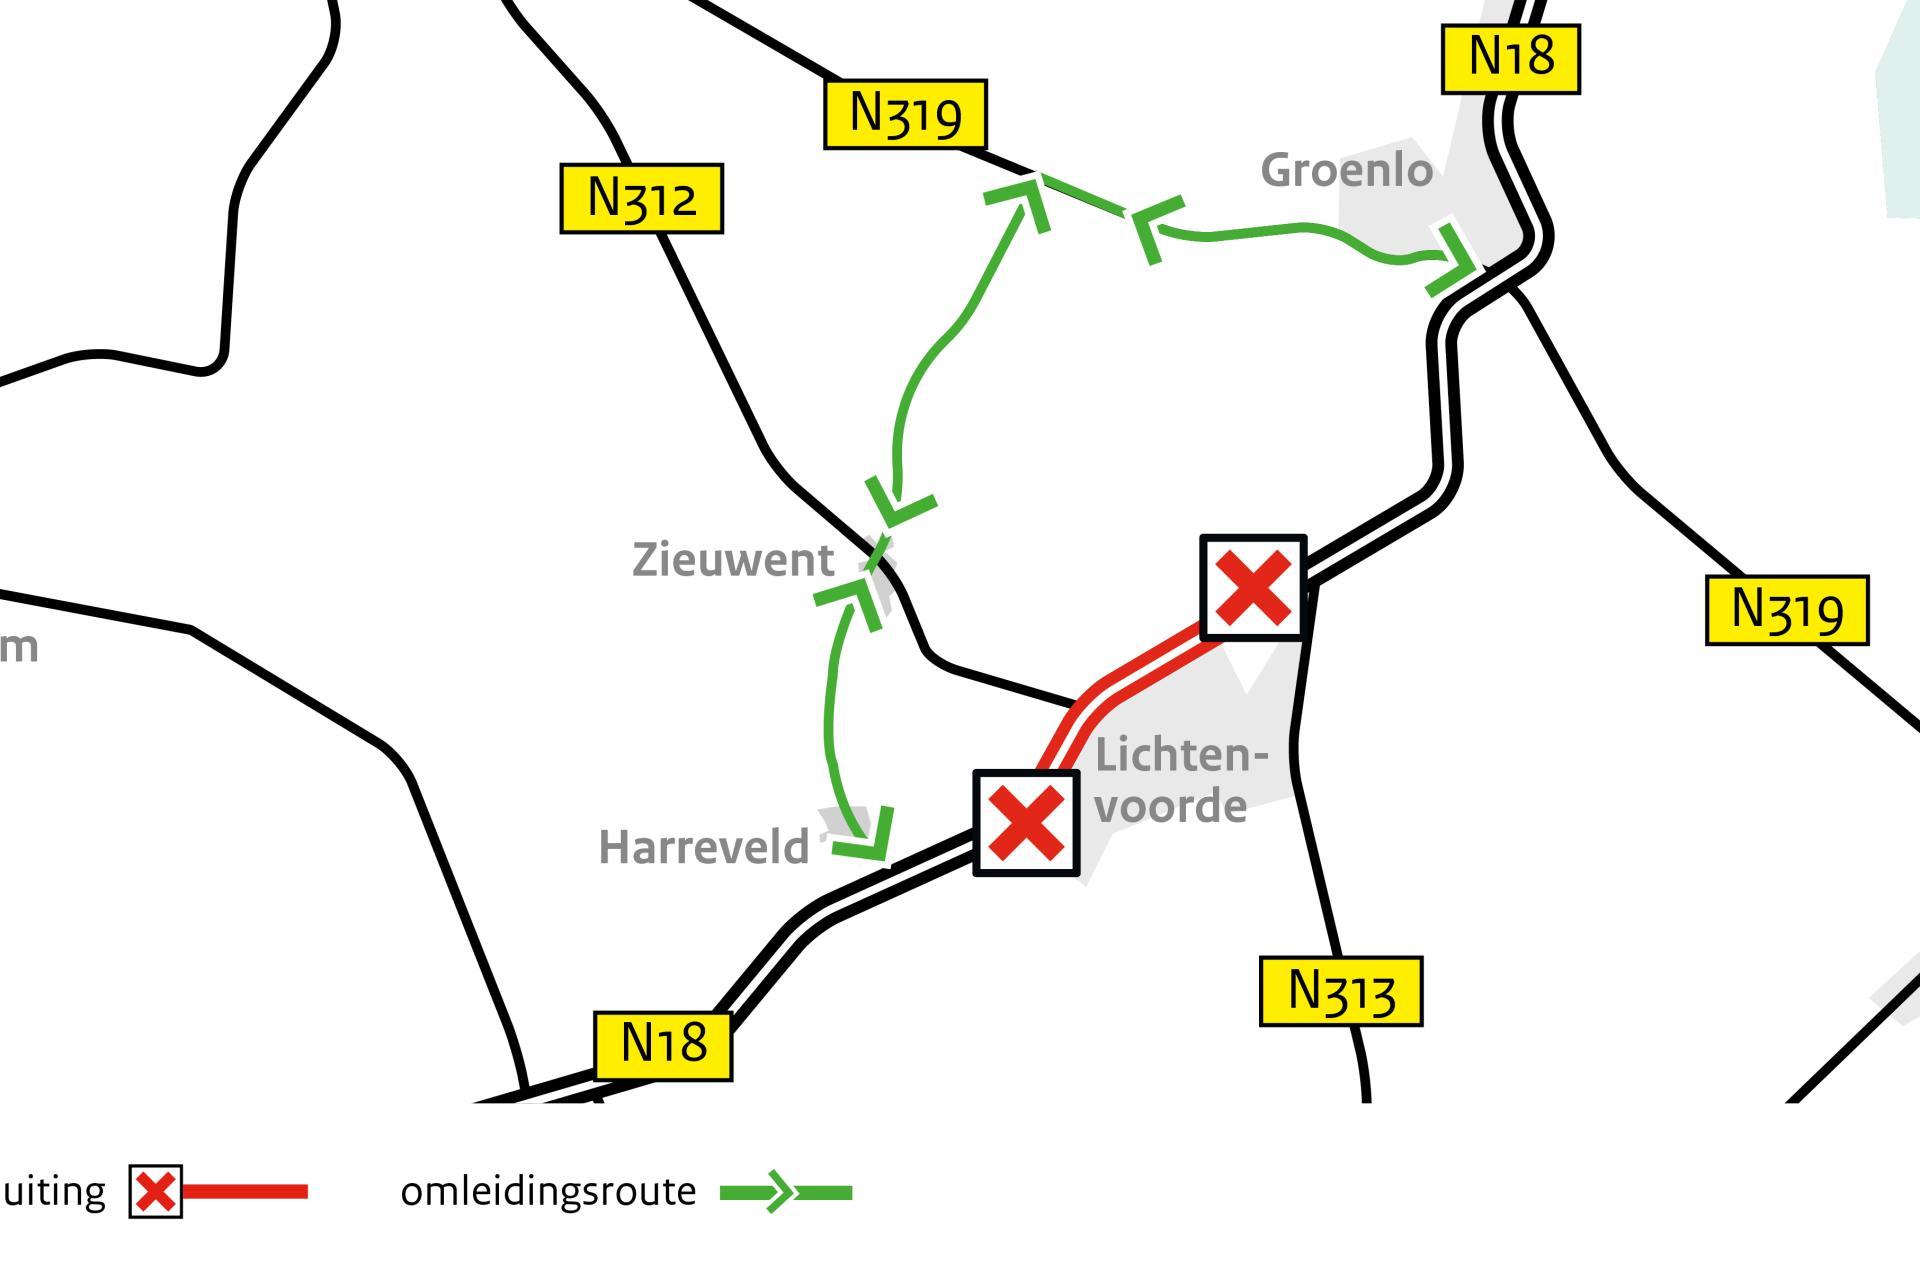 Afbeelding van de lokale omleiding van en naar Zieuwent bij de afsluiting van de N18 bij Lichtenvoorde